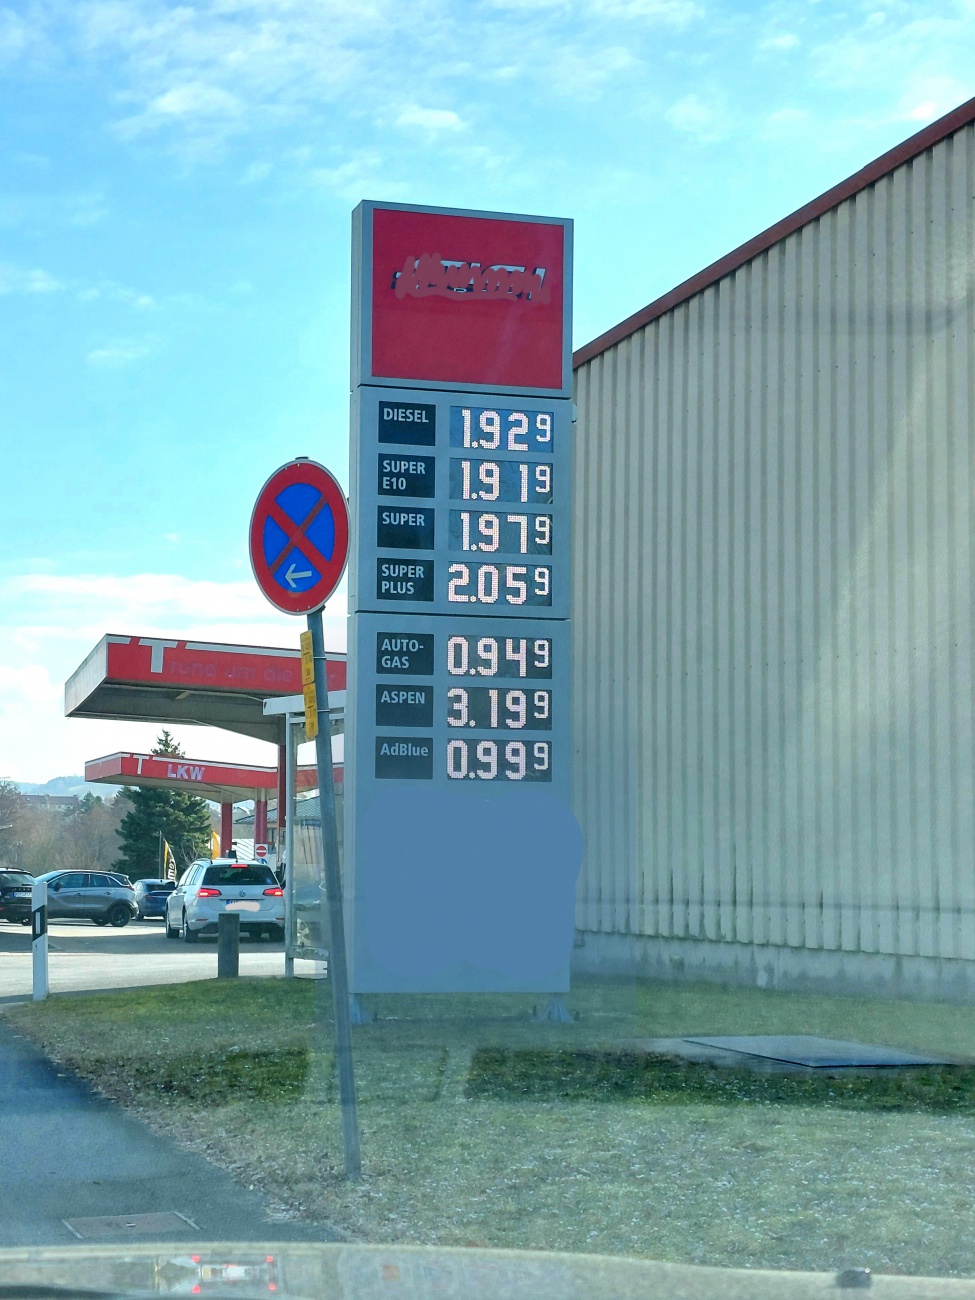 Foto: Martin Zehrer - Diesel und Benzin Preise am 5. März 2022, am Vormittag in Kemnath. 